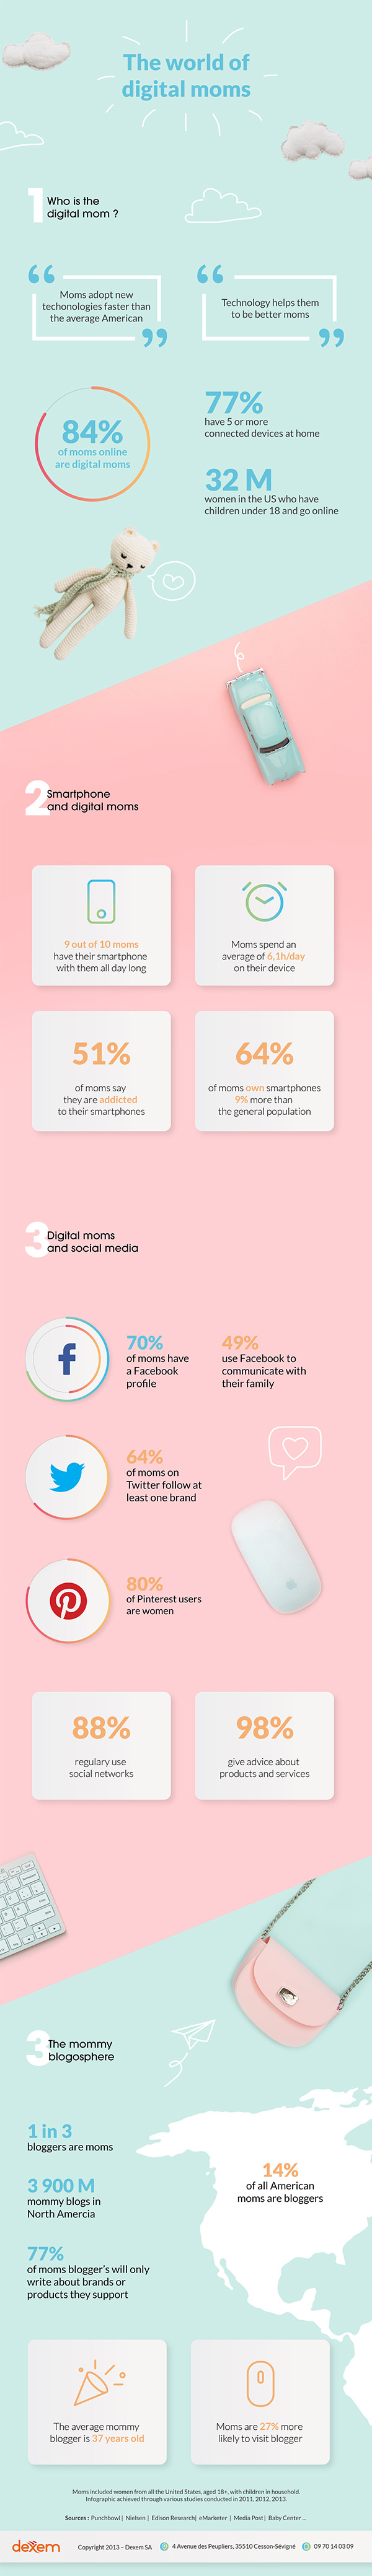 Infographie sur l'usage du smartphone par les Digital Moms.